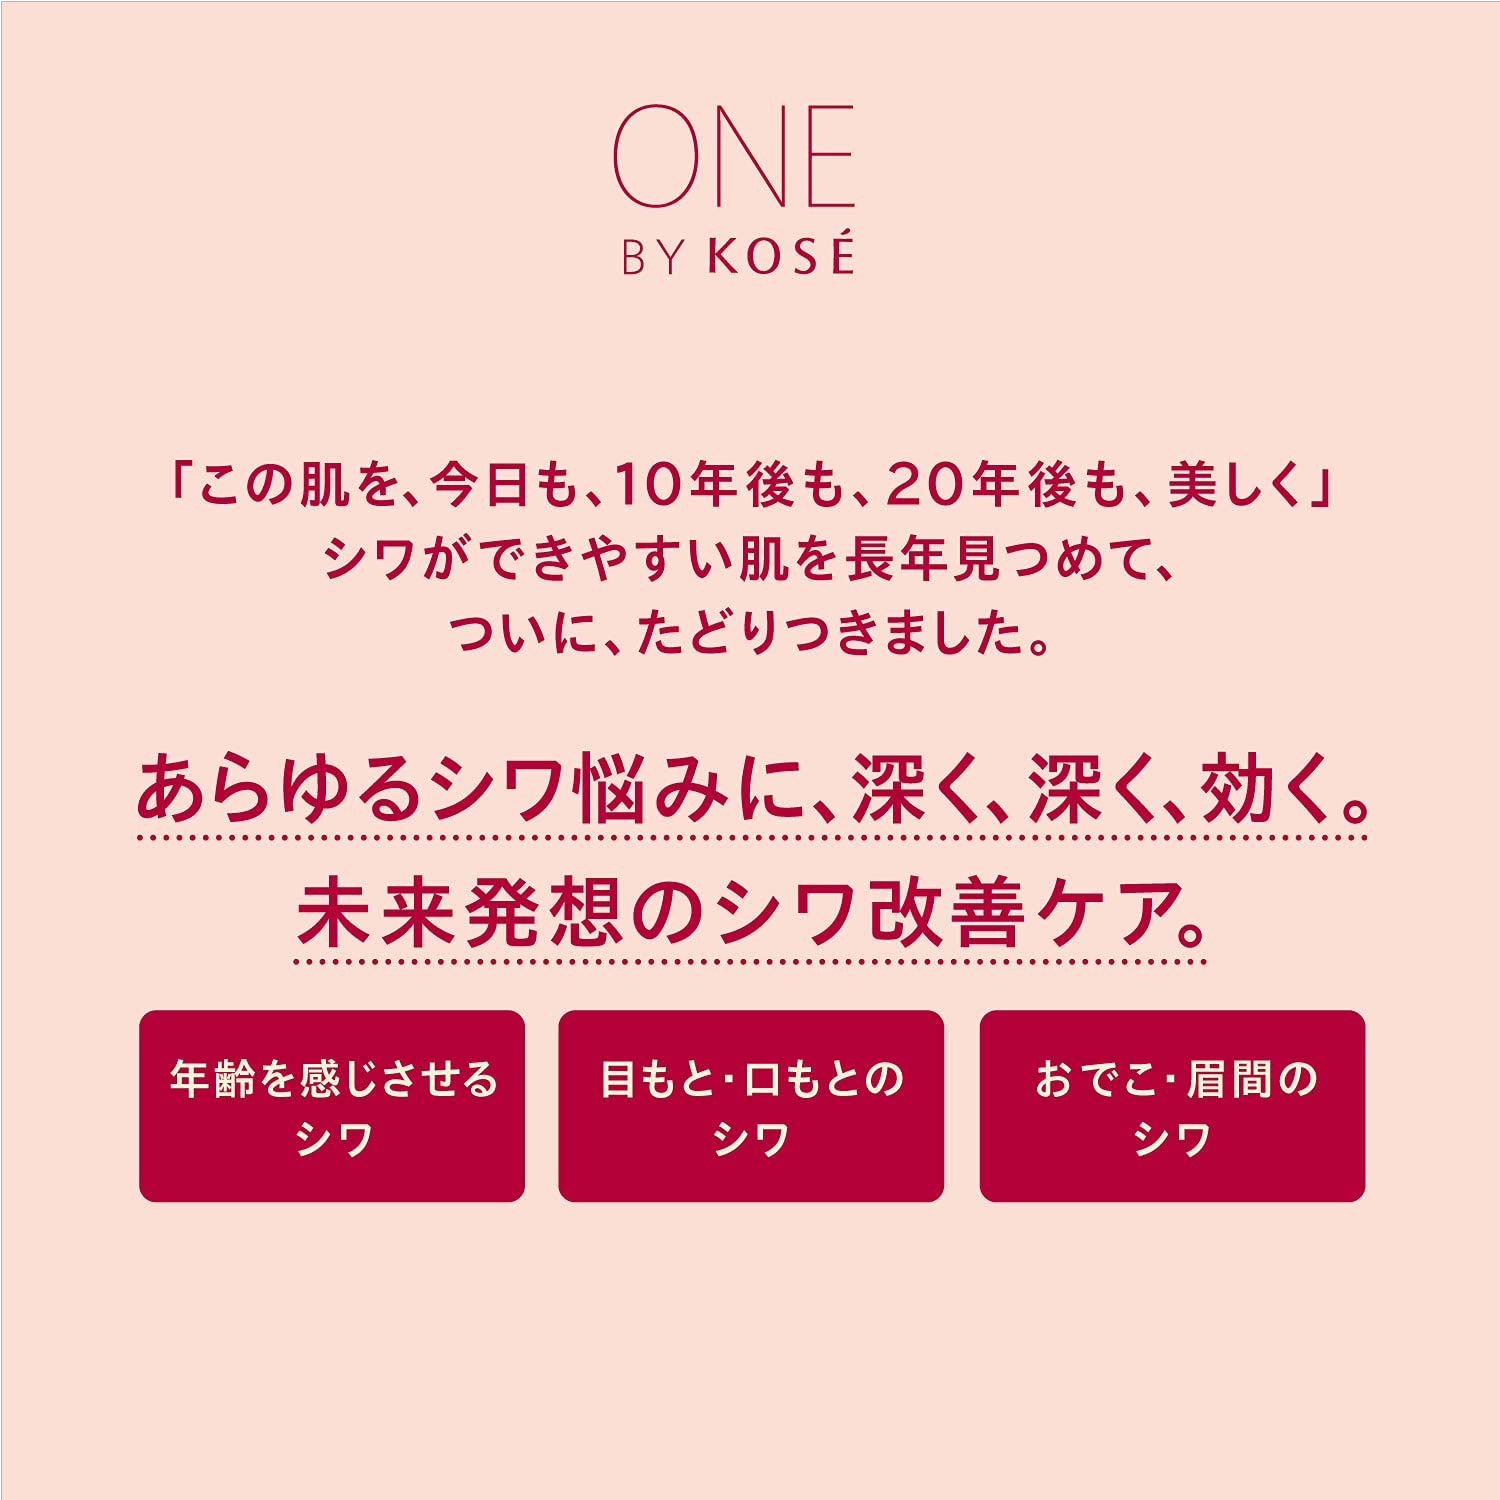 Canmake Eye Bag Concealer 02 Pink Beige - Japanese Concealer Brands - Acne Scars Concealer - YOYO JAPAN